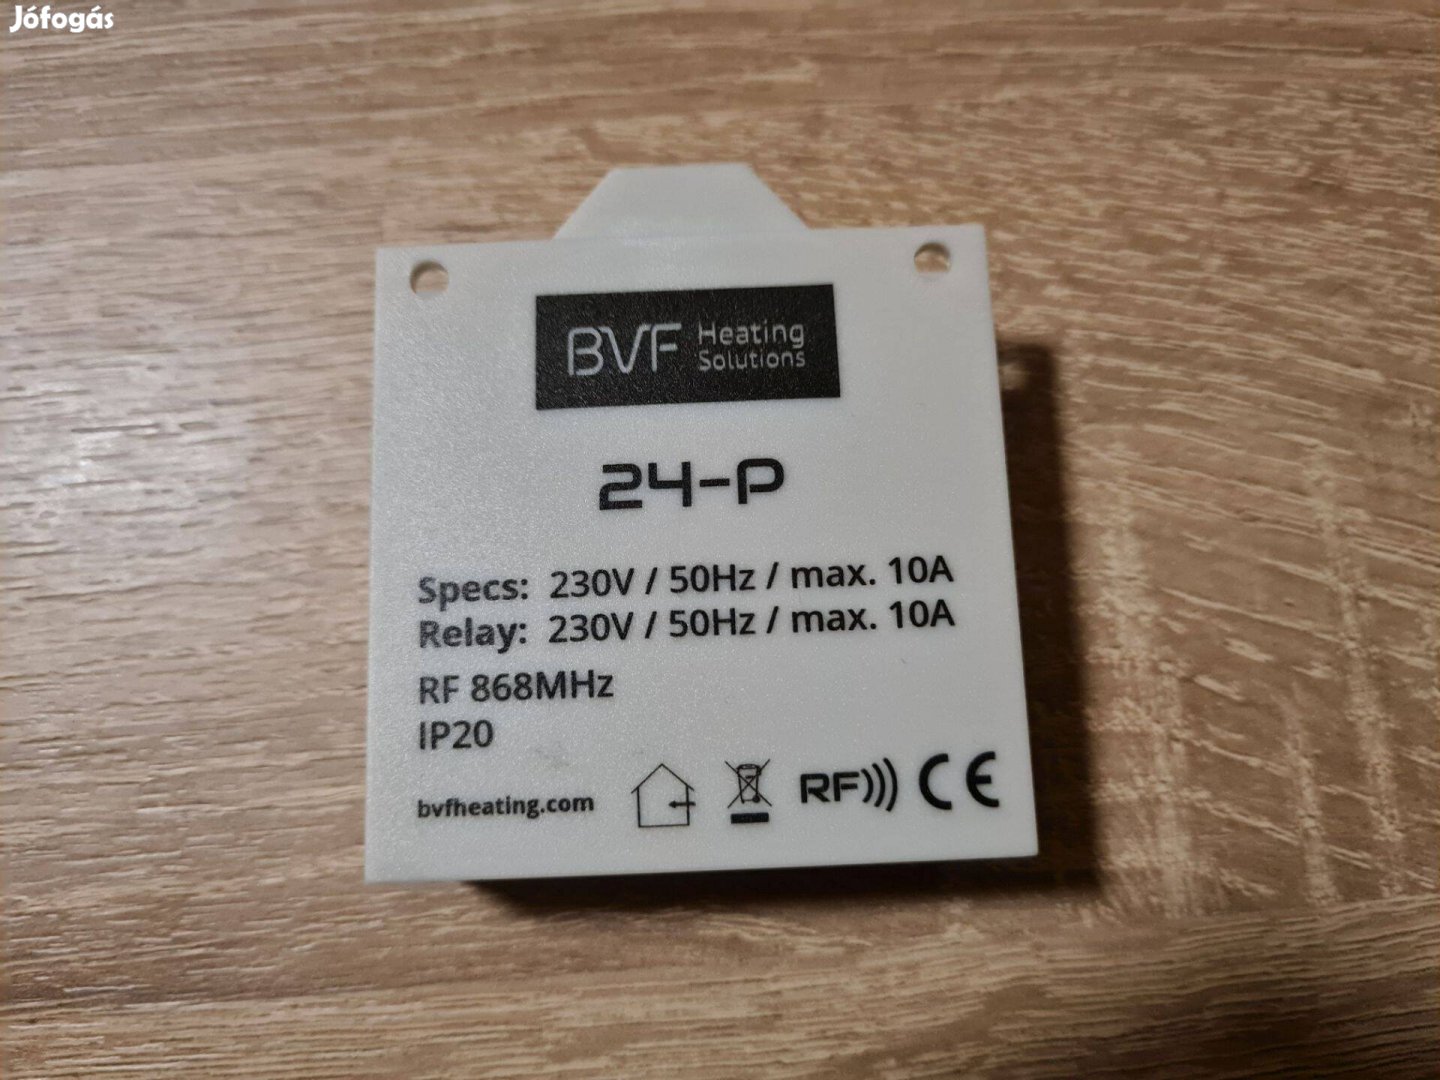 Bvf 24-P termosztát vevőegység